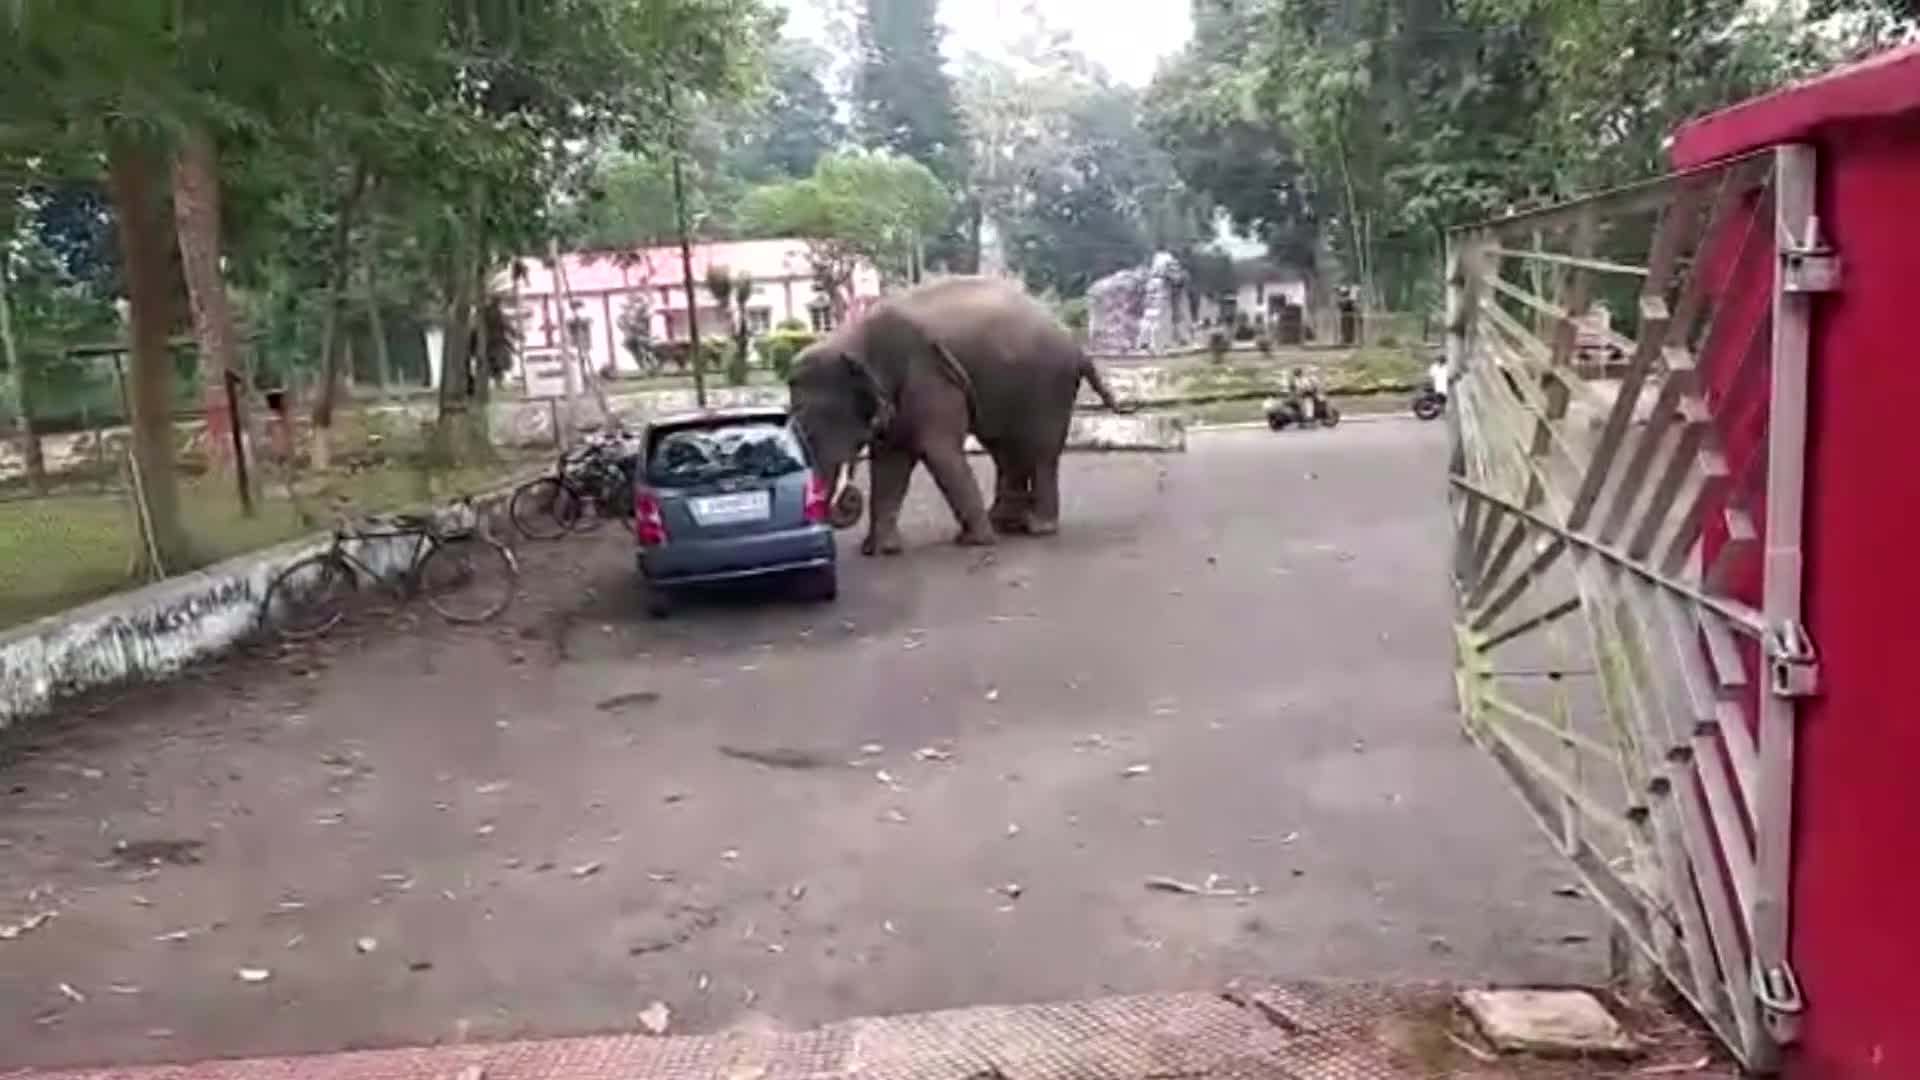 Mới- nóng - Clip: Sức mạnh kinh ngạc của voi khi đẩy cả chiếc ô tô 